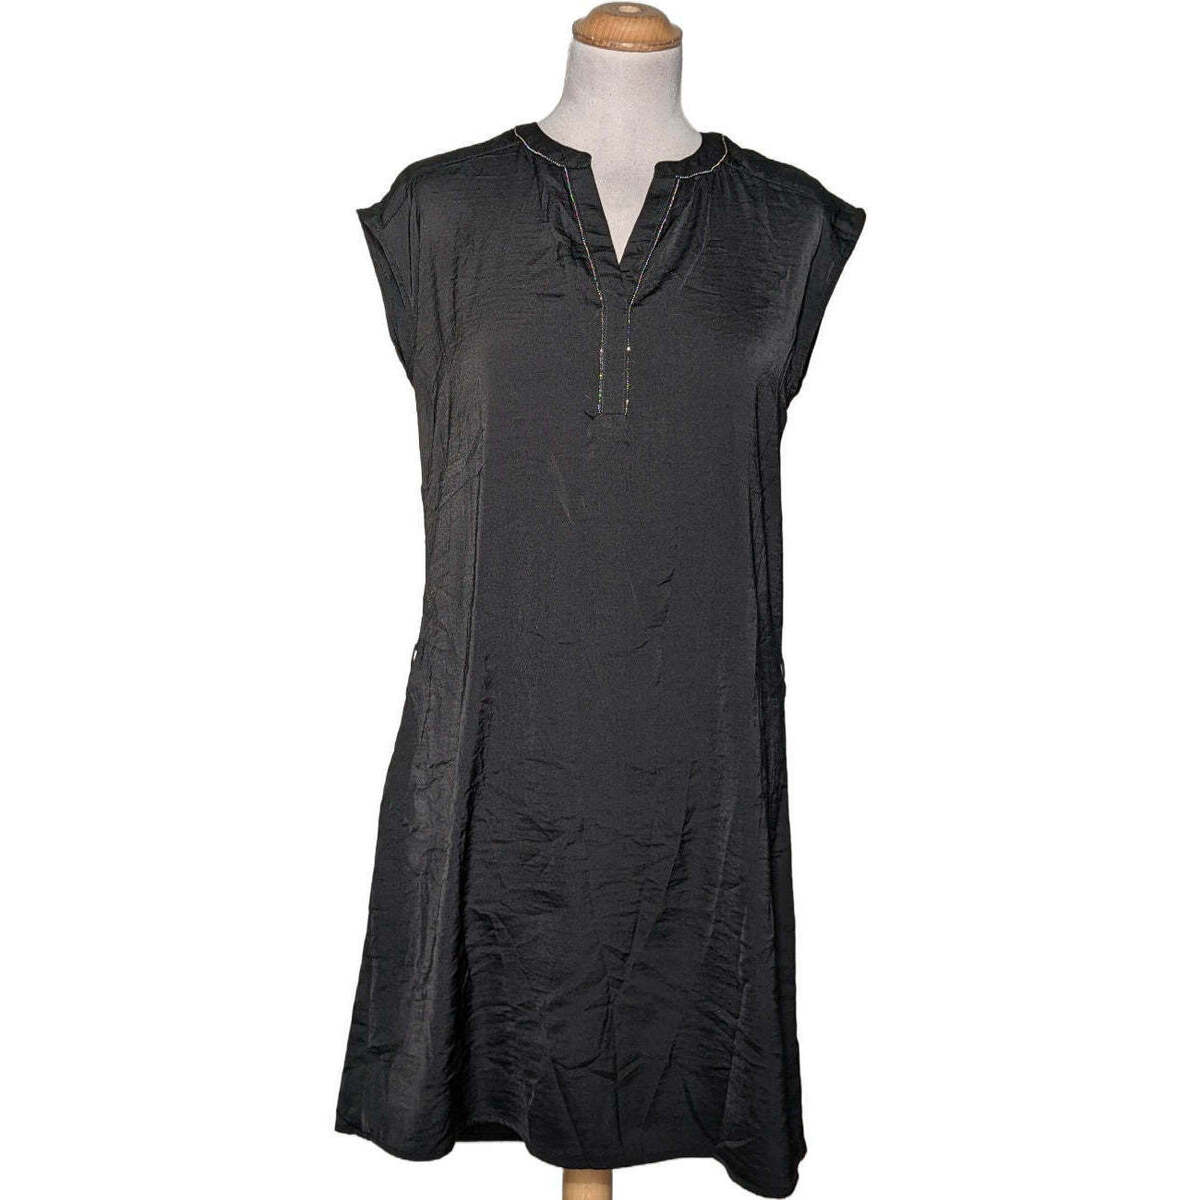 Vêtements Femme Fleur De Safran robe courte  36 - T1 - S Noir Noir